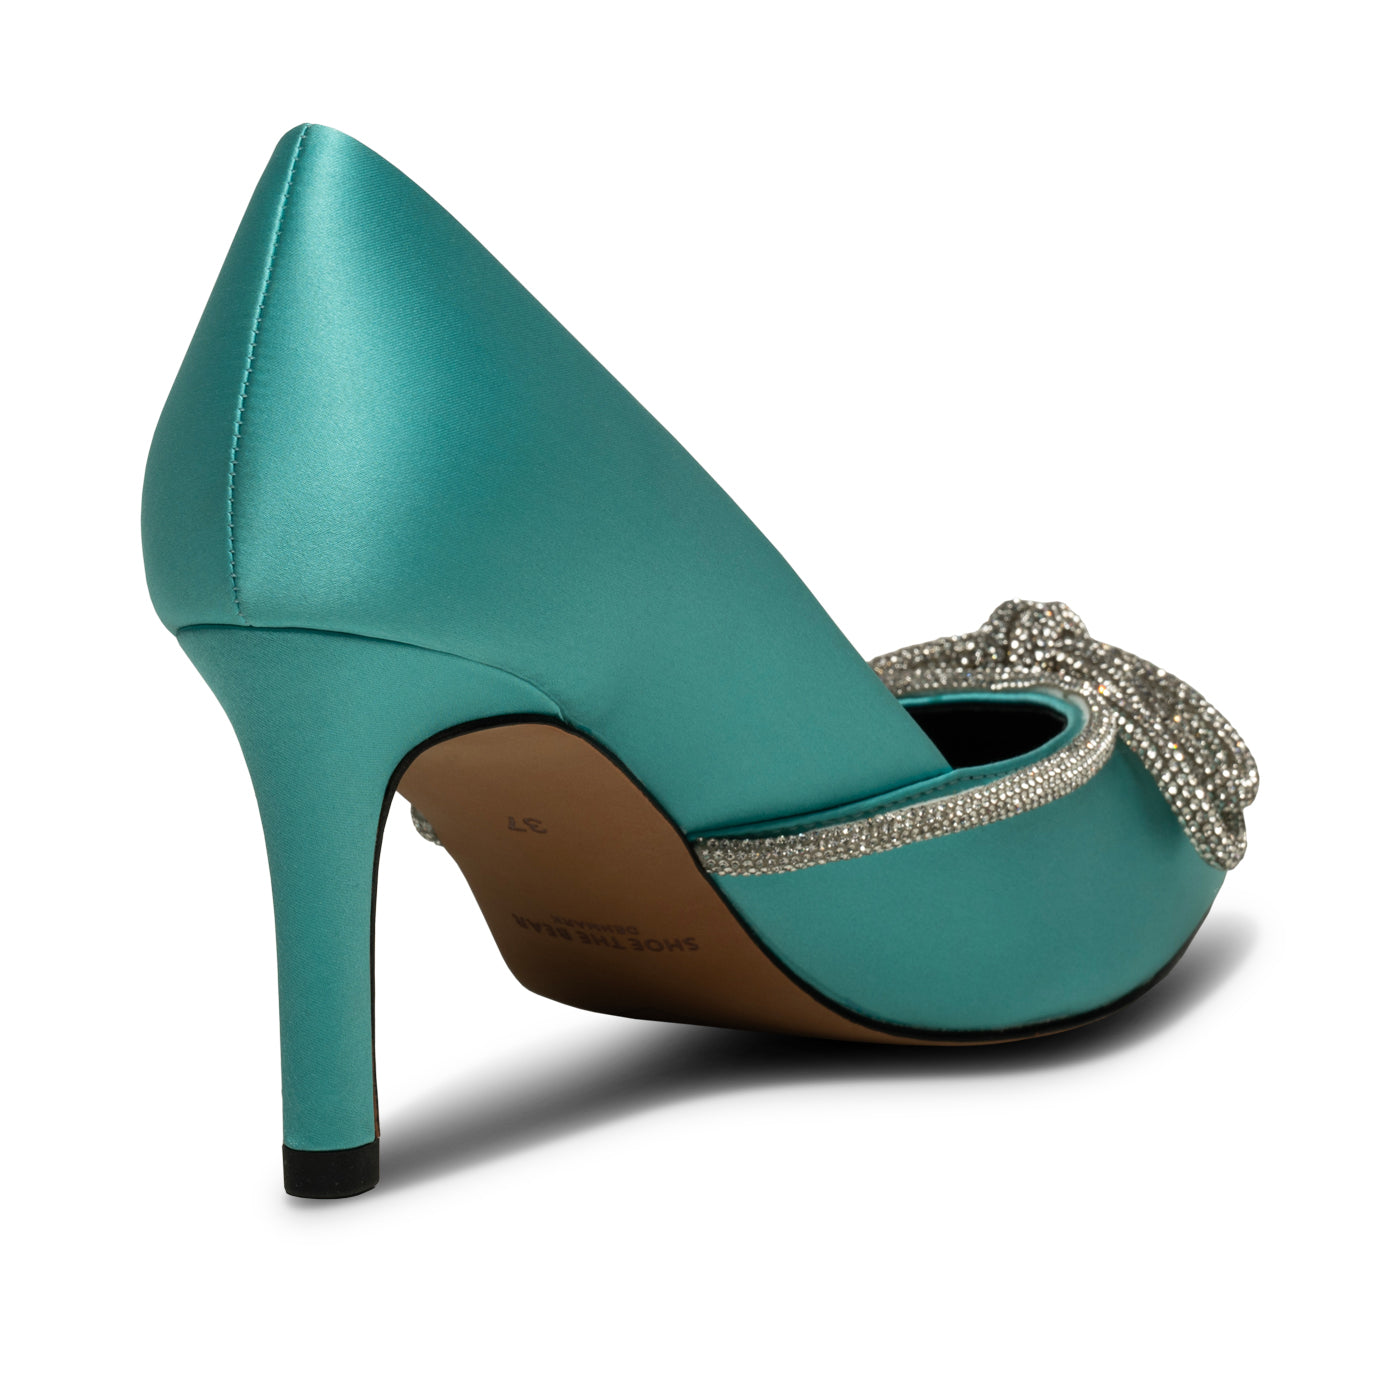 US$30.87-Bigtree Shoes Plus Size 43 Blue Woman Pumps Fashion High Heels  Shoes Women Stiletto Party Shoes Women Heels Female Heele-Description